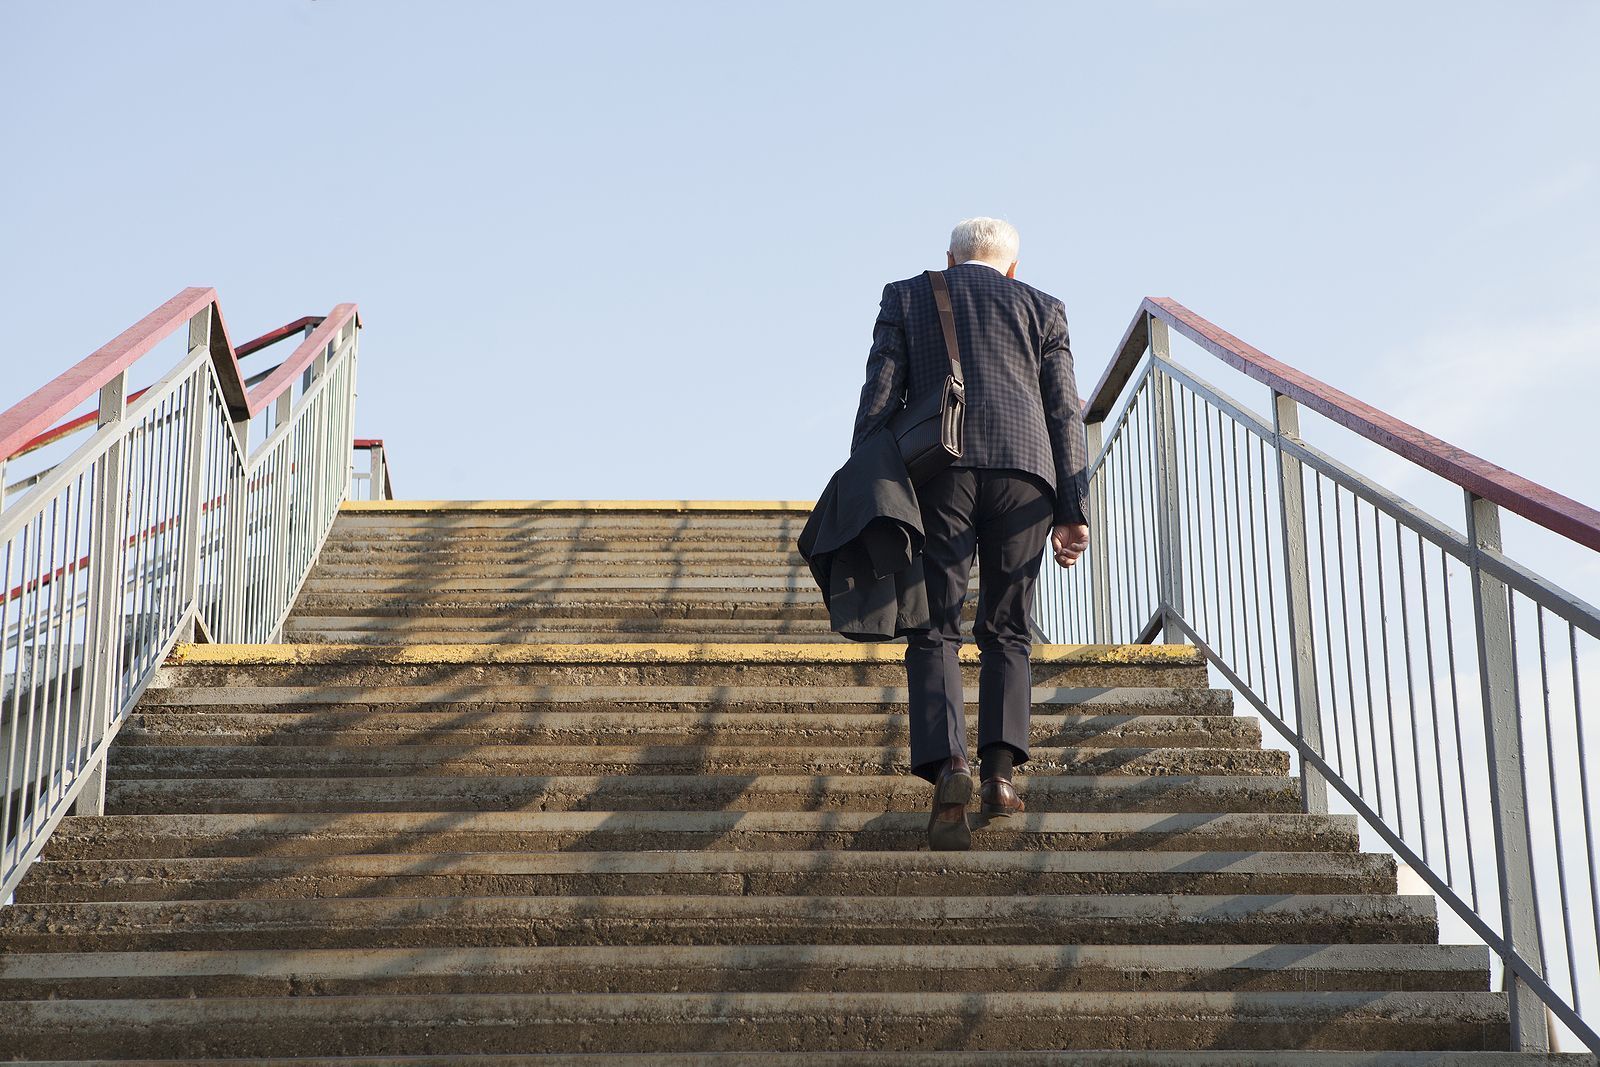 El Supremo avala despedir más barato a los trabajadores mayores de 60: "Es edadismo puro y duro"